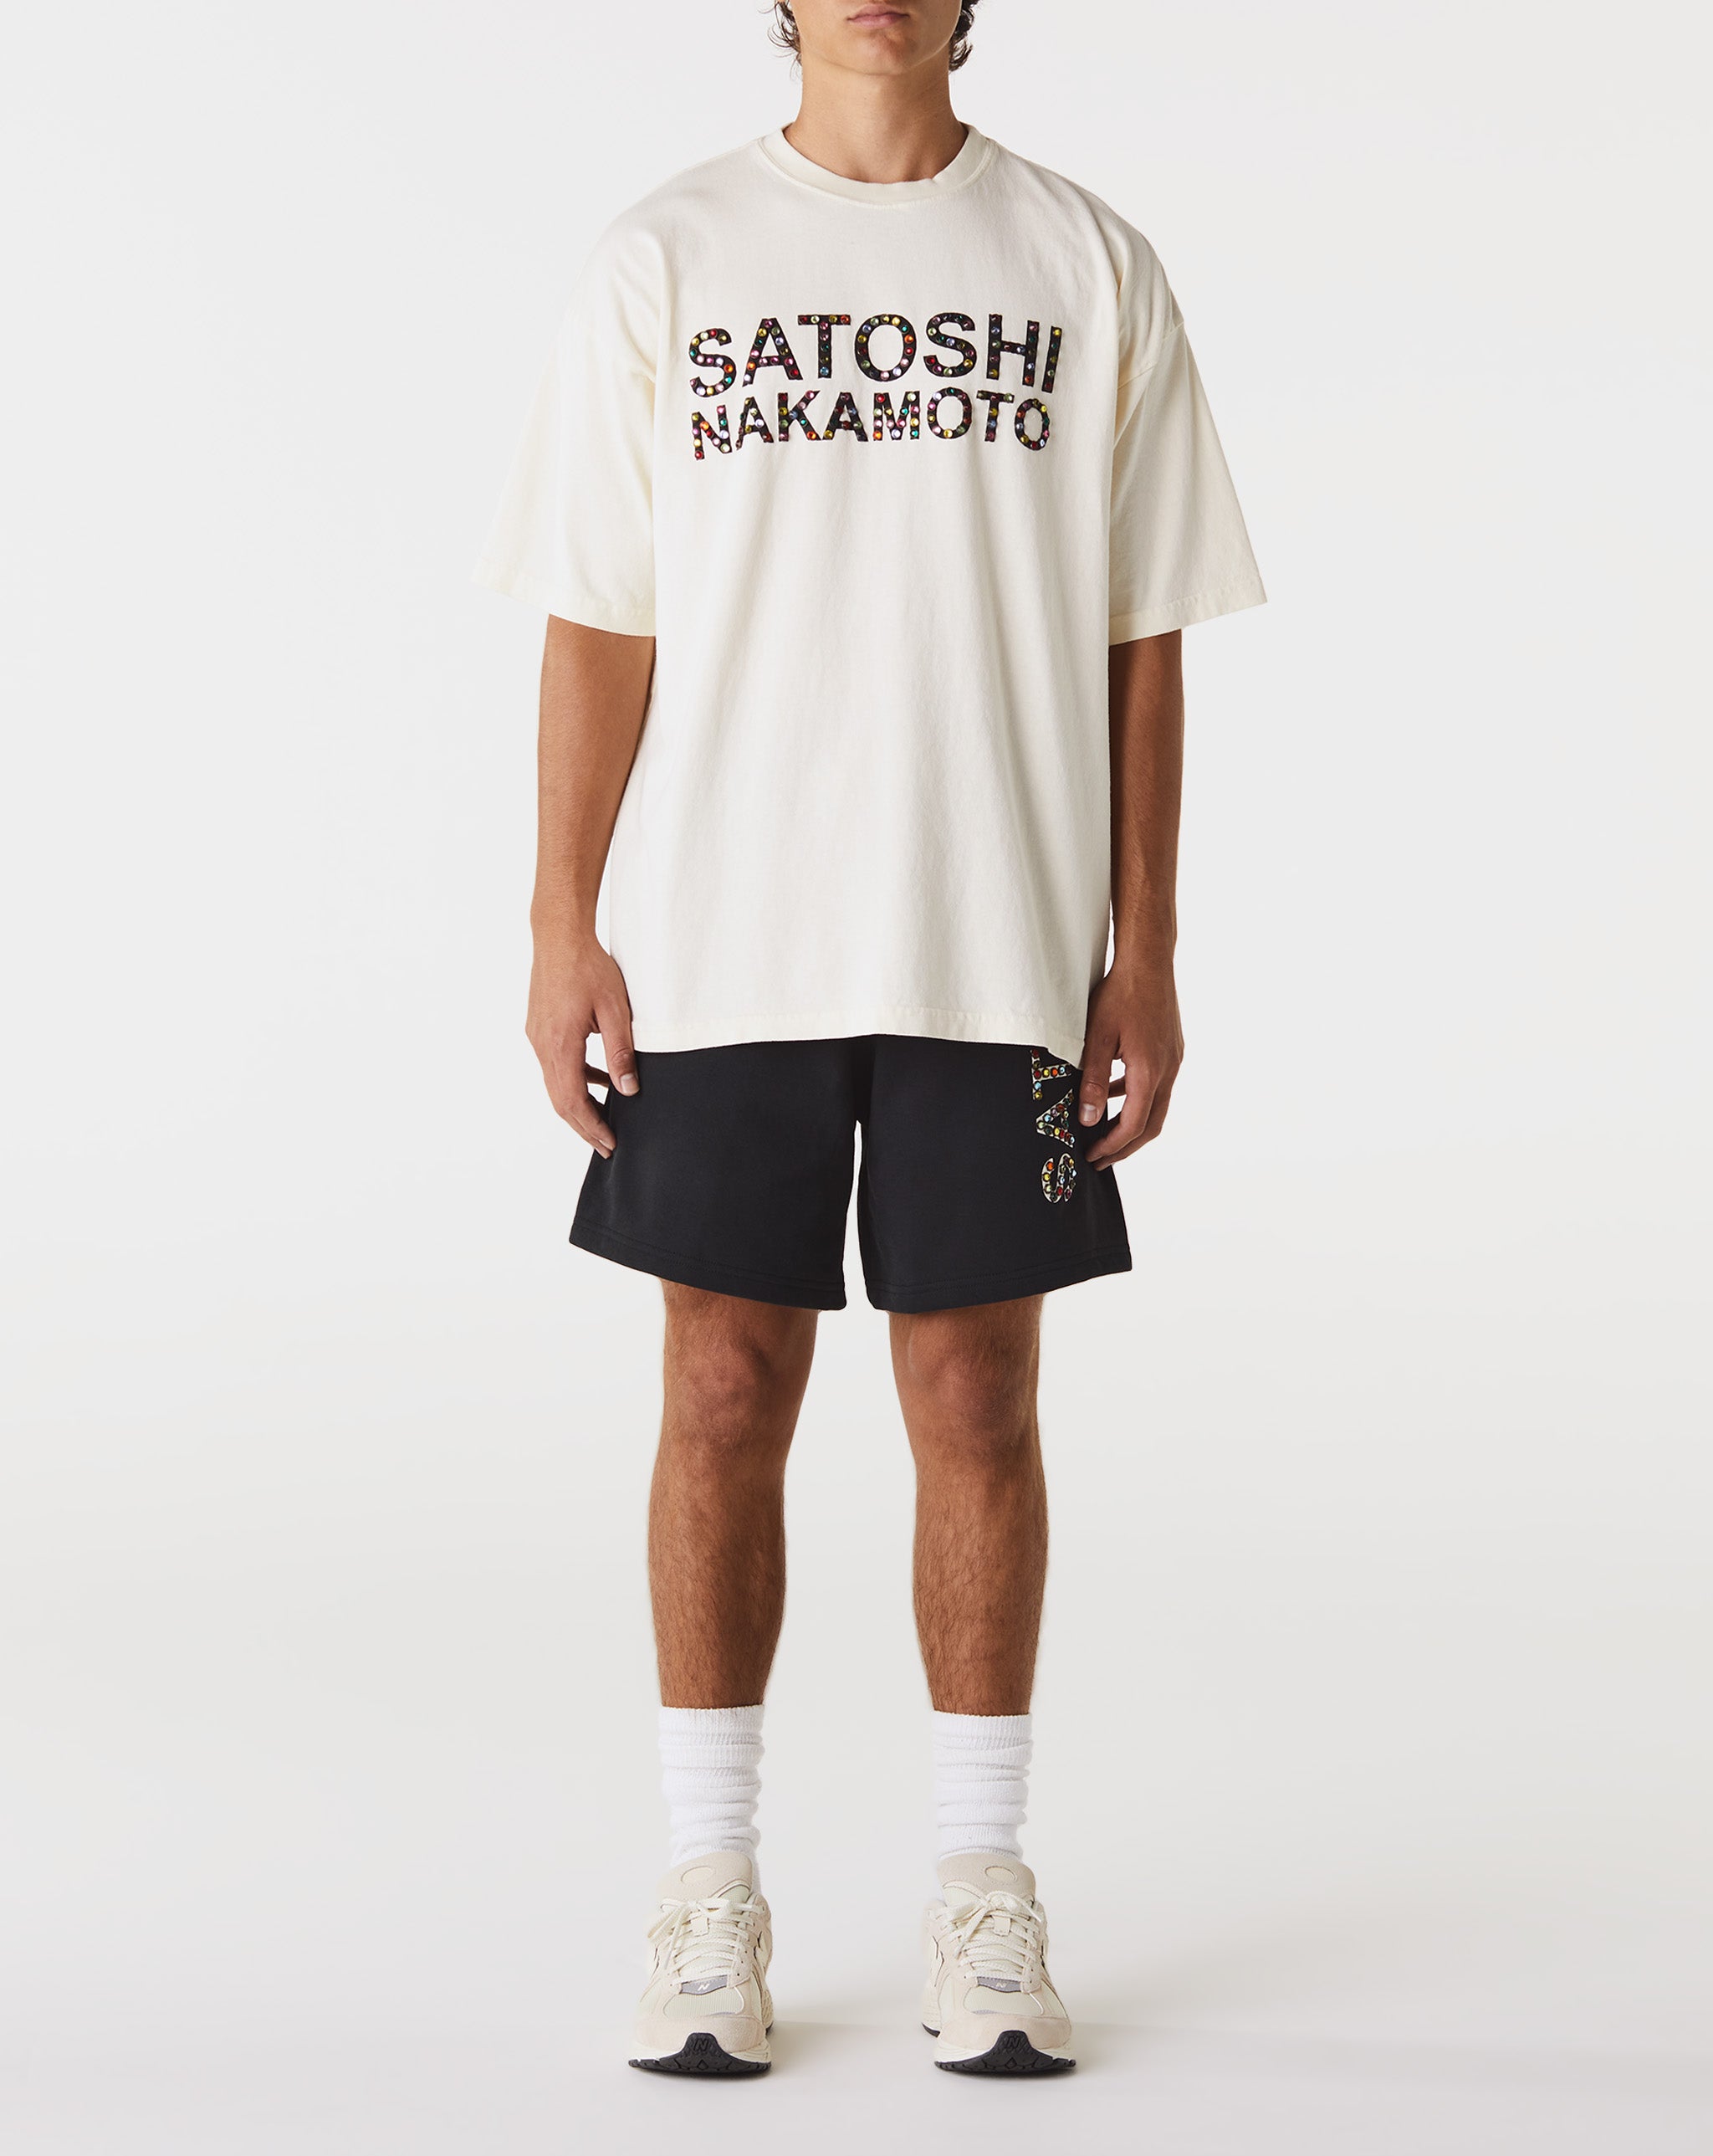 Satoshi Nakamoto Studded Logo T-Shirt  - Cheap 127-0 Jordan outlet